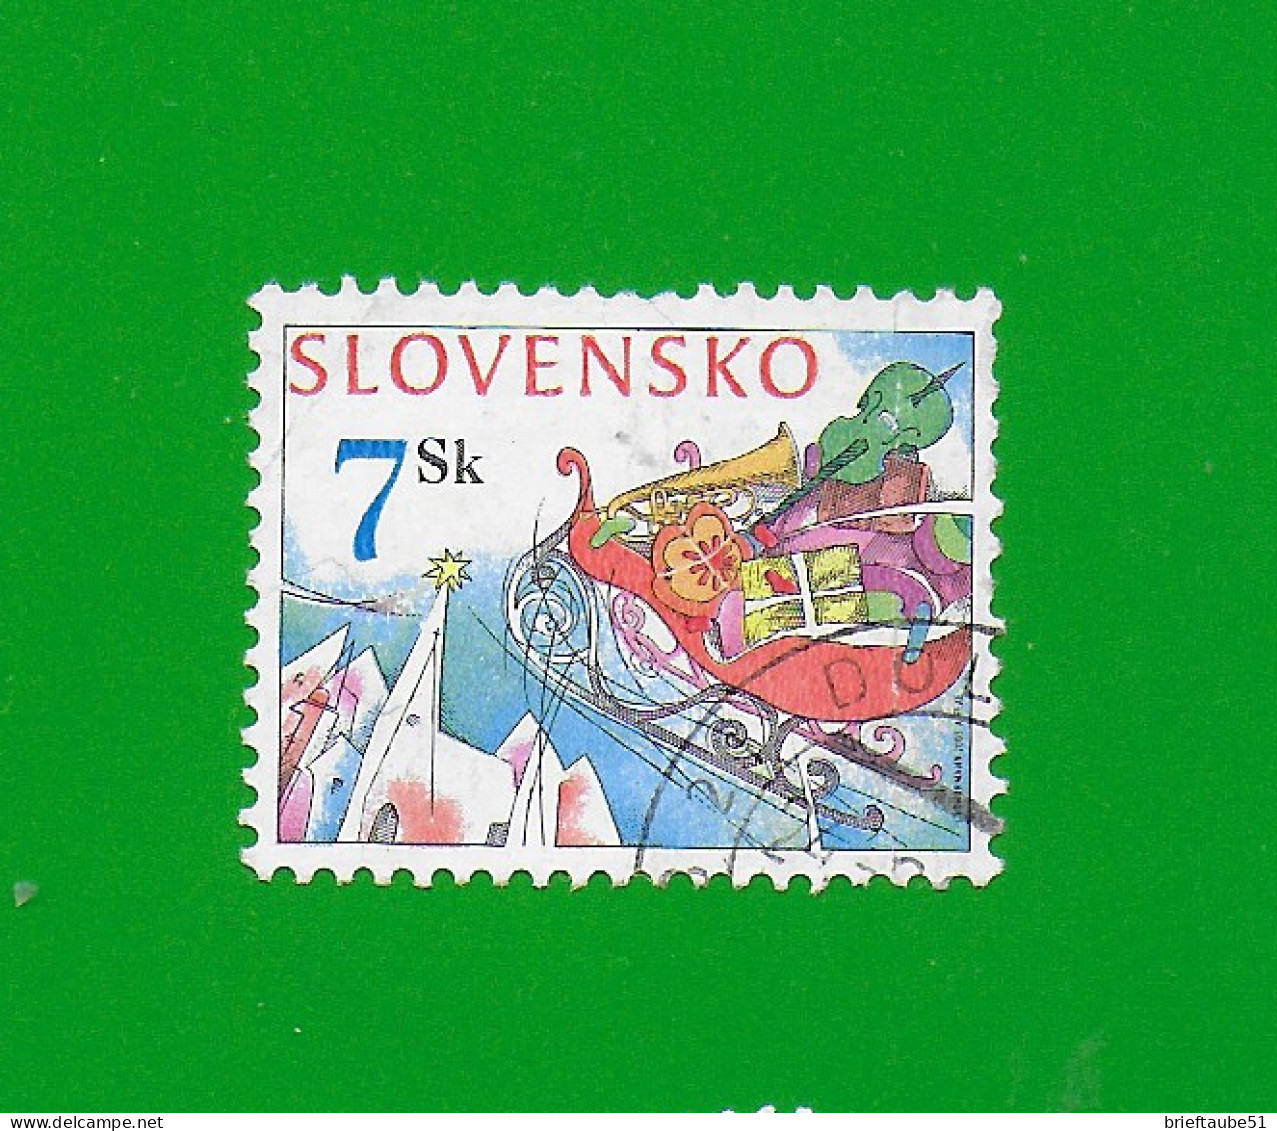 SLOVAKIA REPUBLIC 2003 Gestempelt°Used/Bedarf  MiNr. 469 "WEIHNCHTEN  #  Schlitten Mit Geschenken" - Used Stamps